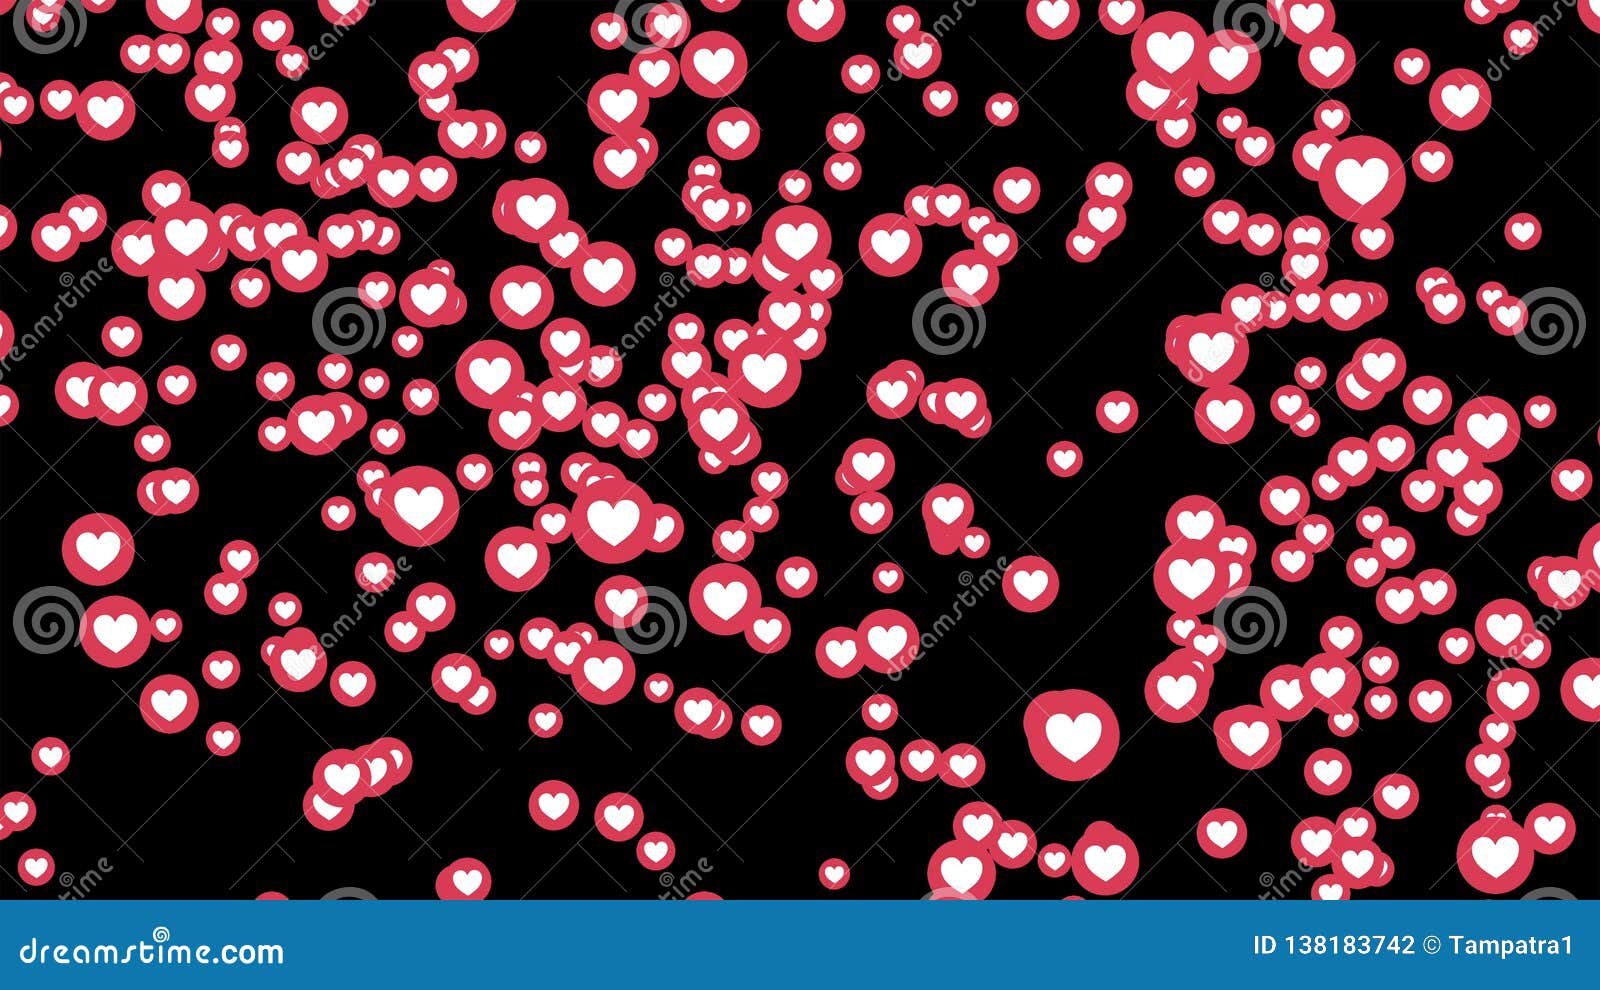 Video trực tiếp Facebook biểu tượng trái tim: Sẵn sàng để vào phòng chat và trò chuyện cùng những người bạn yêu thương? Video trực tiếp Facebook với biểu tượng trái tim sẽ đưa bạn đến với những trải nghiệm tuyệt vời và giúp bạn kéo dài tình bạn hơn bao giờ hết.